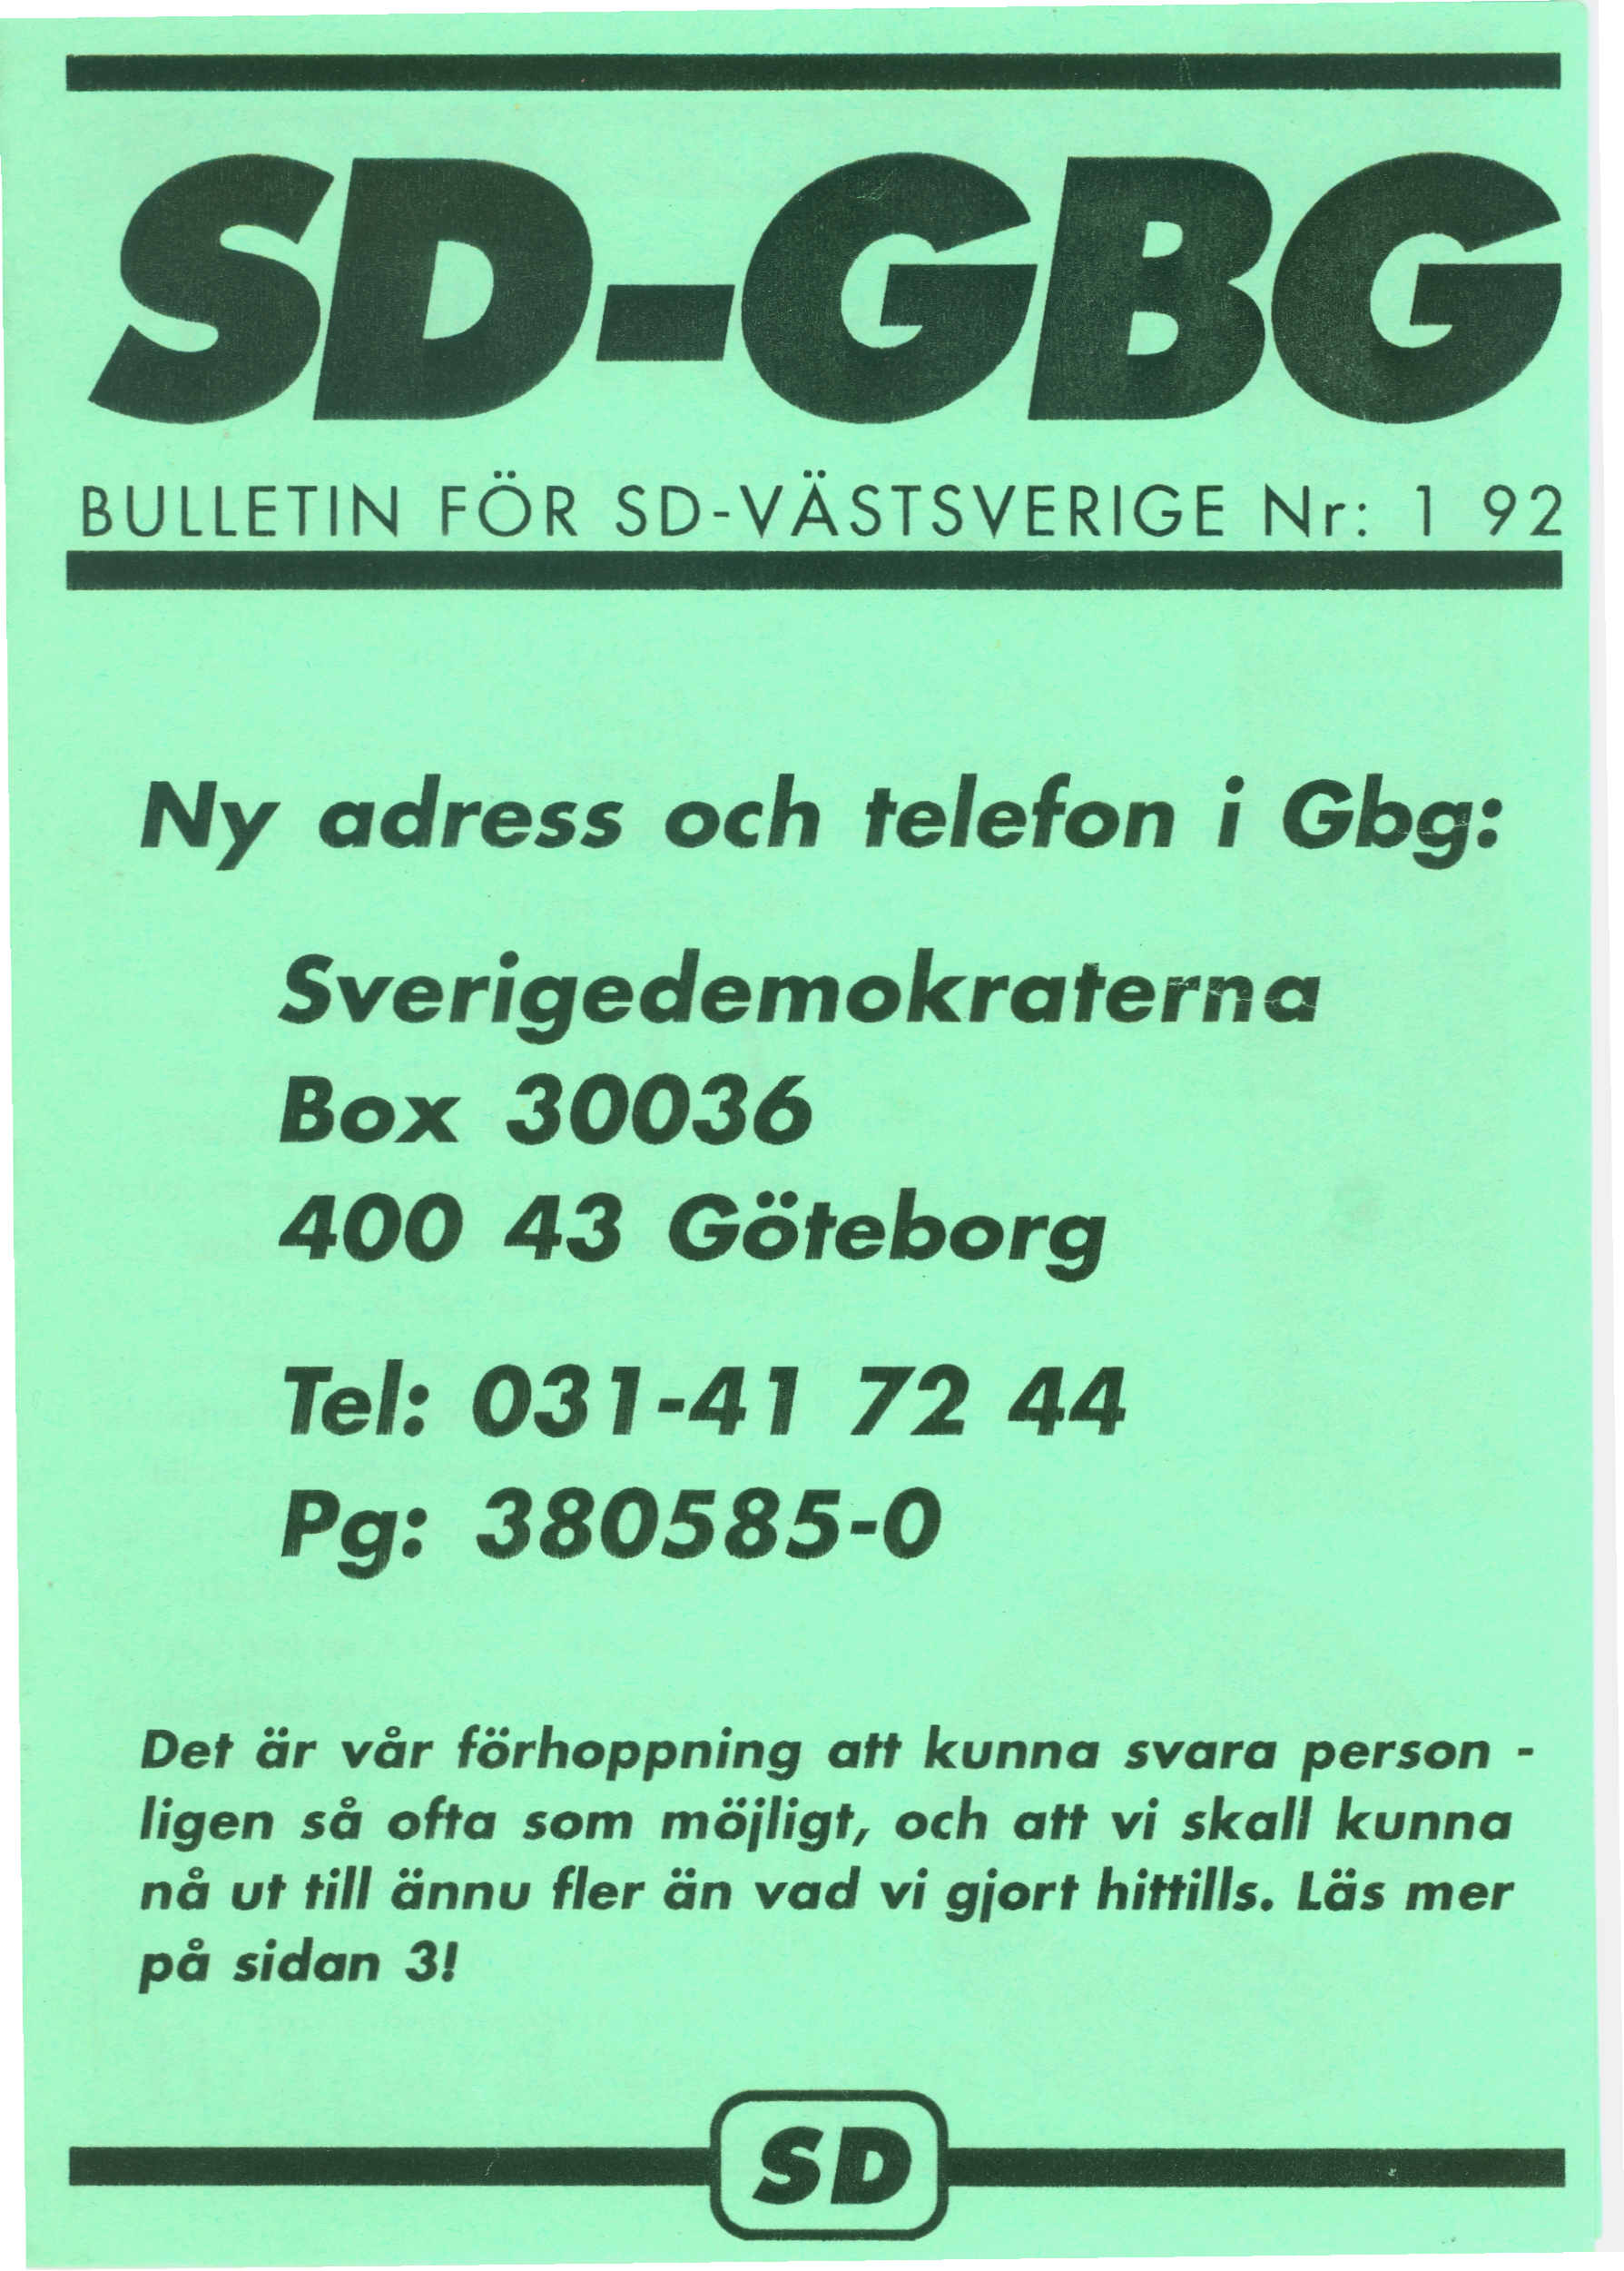 -.... BULLETIN FOR SD-VASTSVERIGE Nr: 1 92 Ny adress och telefon i Gbg: Sverigedemokraterna Box 30036 400 43 Goteborg Tel: 031-41 72 44 Pg: 380585-0 Det ar